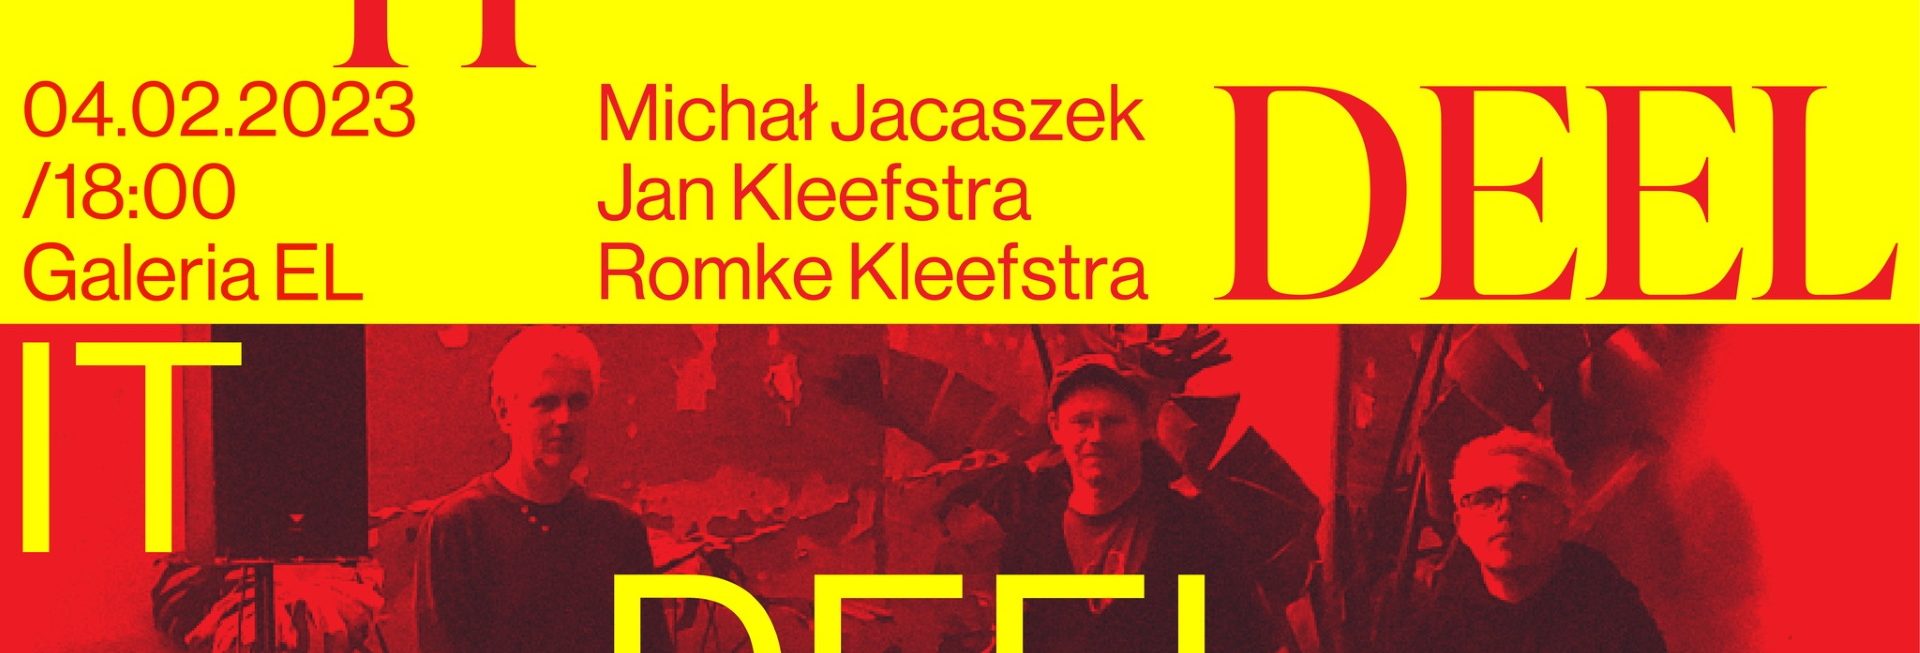 Plakat zapraszający w sobotę 4 lutego 2023 r. do Elbląga na koncert zespołu IT DEEL Elbląg 2023.